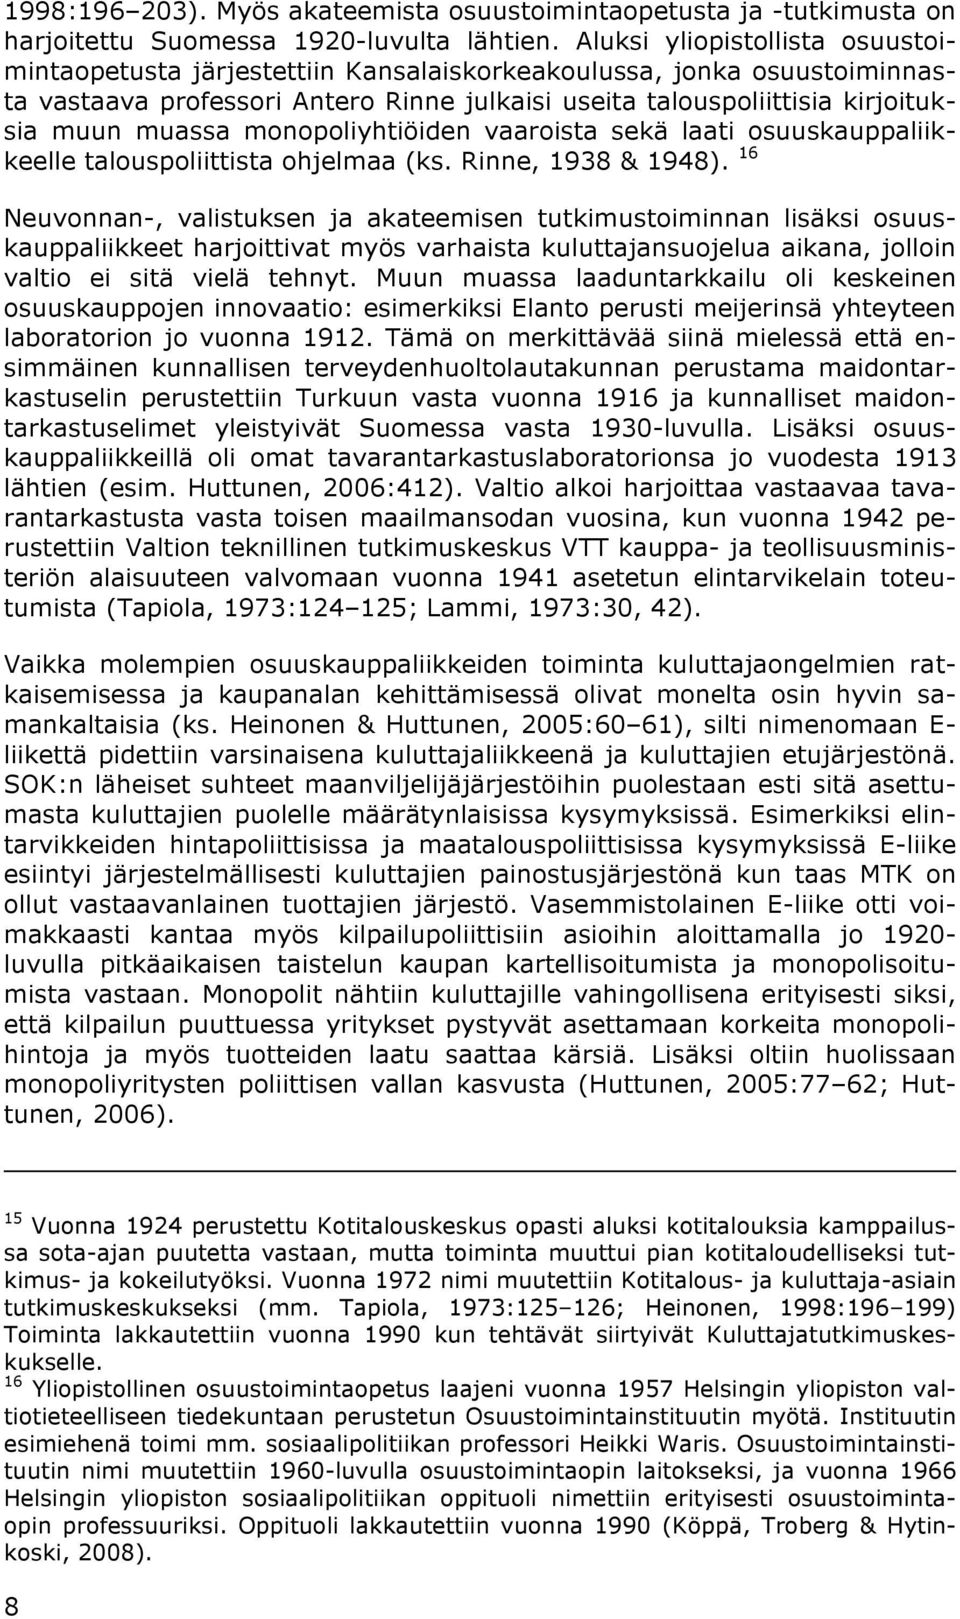 monopoliyhtiöiden vaaroista sekä laati osuuskauppaliikkeelle talouspoliittista ohjelmaa (ks. Rinne, 1938 & 1948).